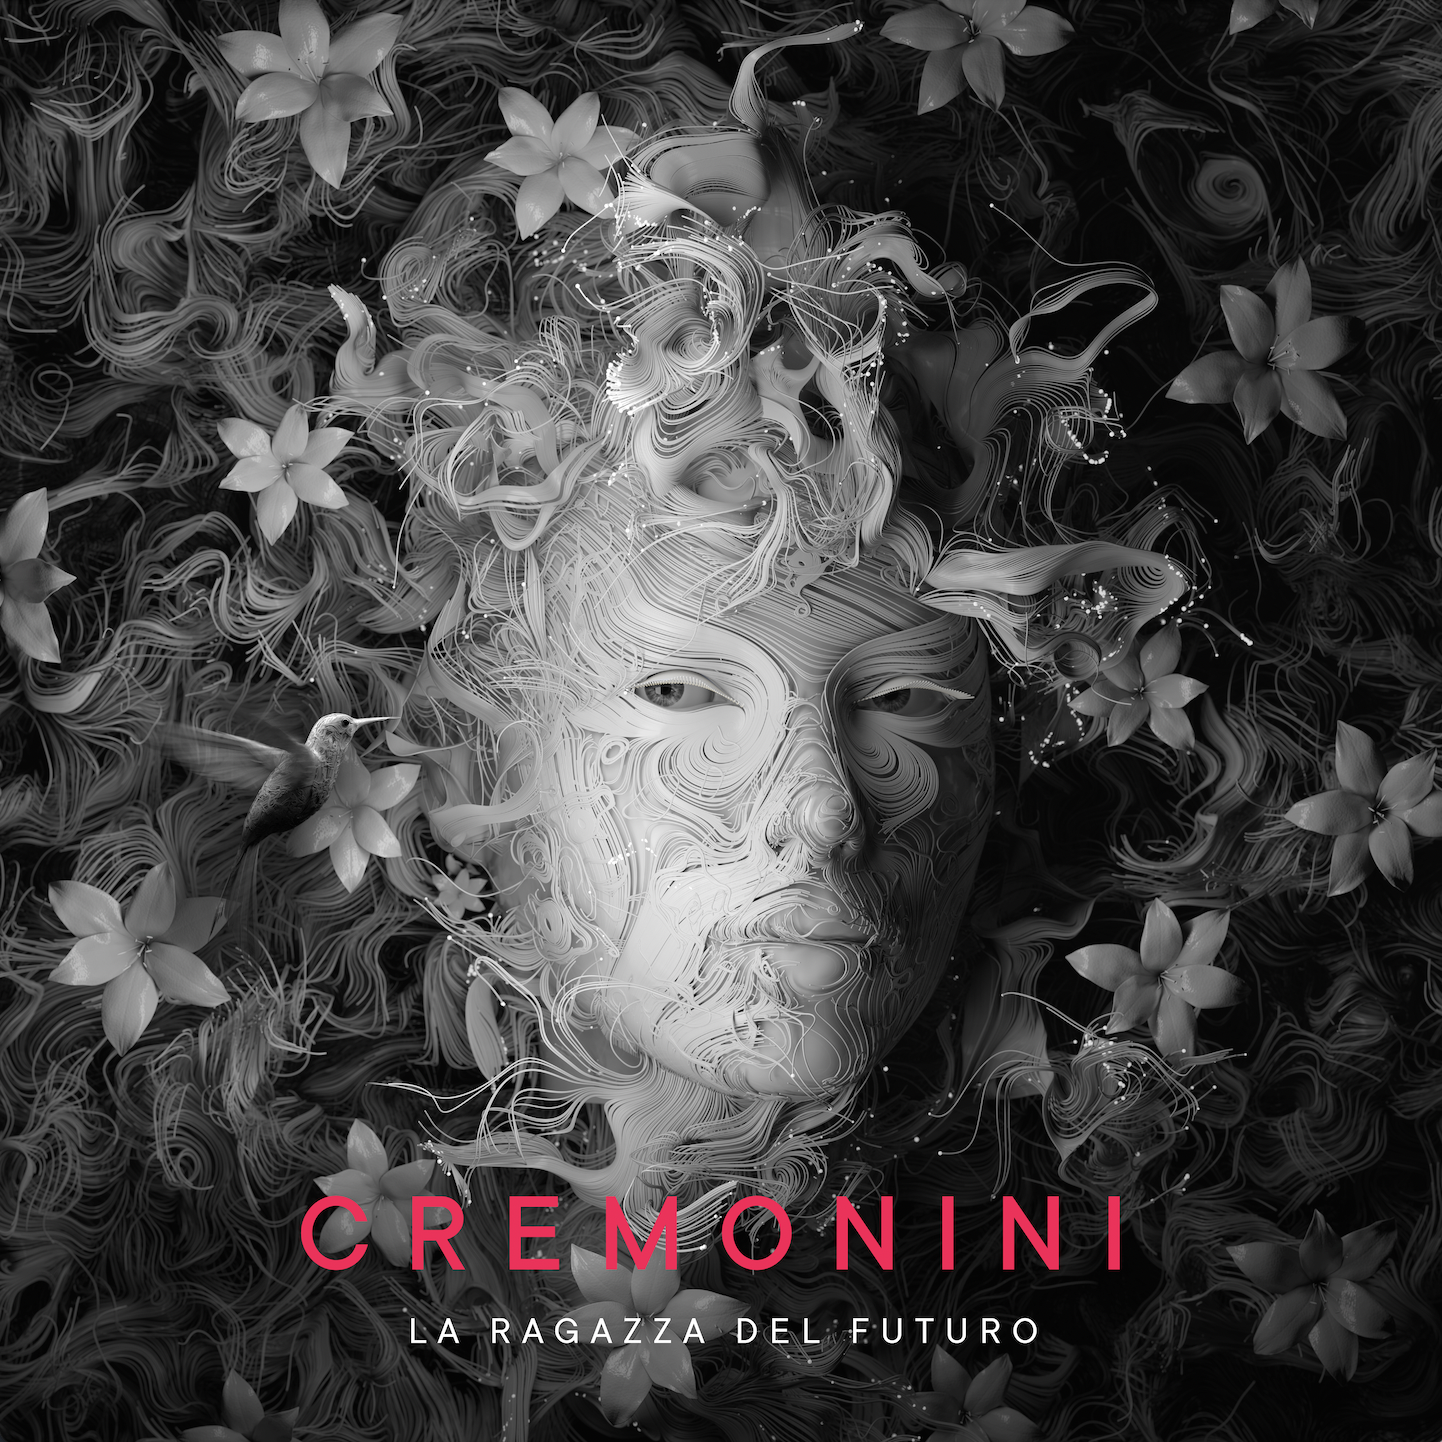 Cremonini, esce “Colibrì” il nuovo singolo che anticipa l’album “La Ragazza del Futuro”